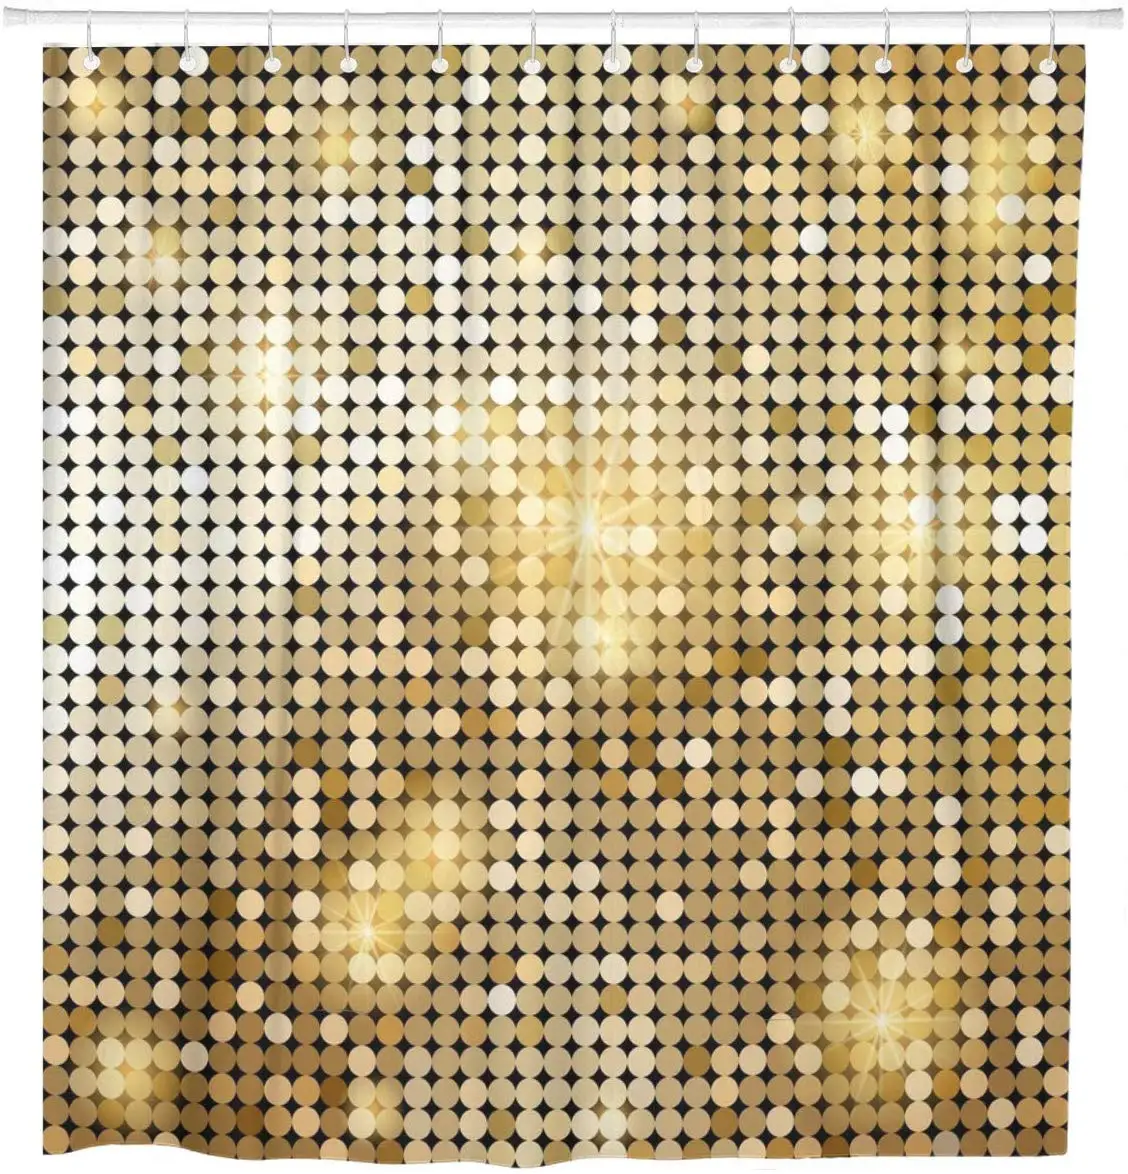 Rumeno Zlato Zlato Svetleče Mozaik v Disco Krogla Povzetek Tuš Zavesa Nepremočljiva Tkanine iz Poliestra 72 x 78 Cm, s Trnkov 0